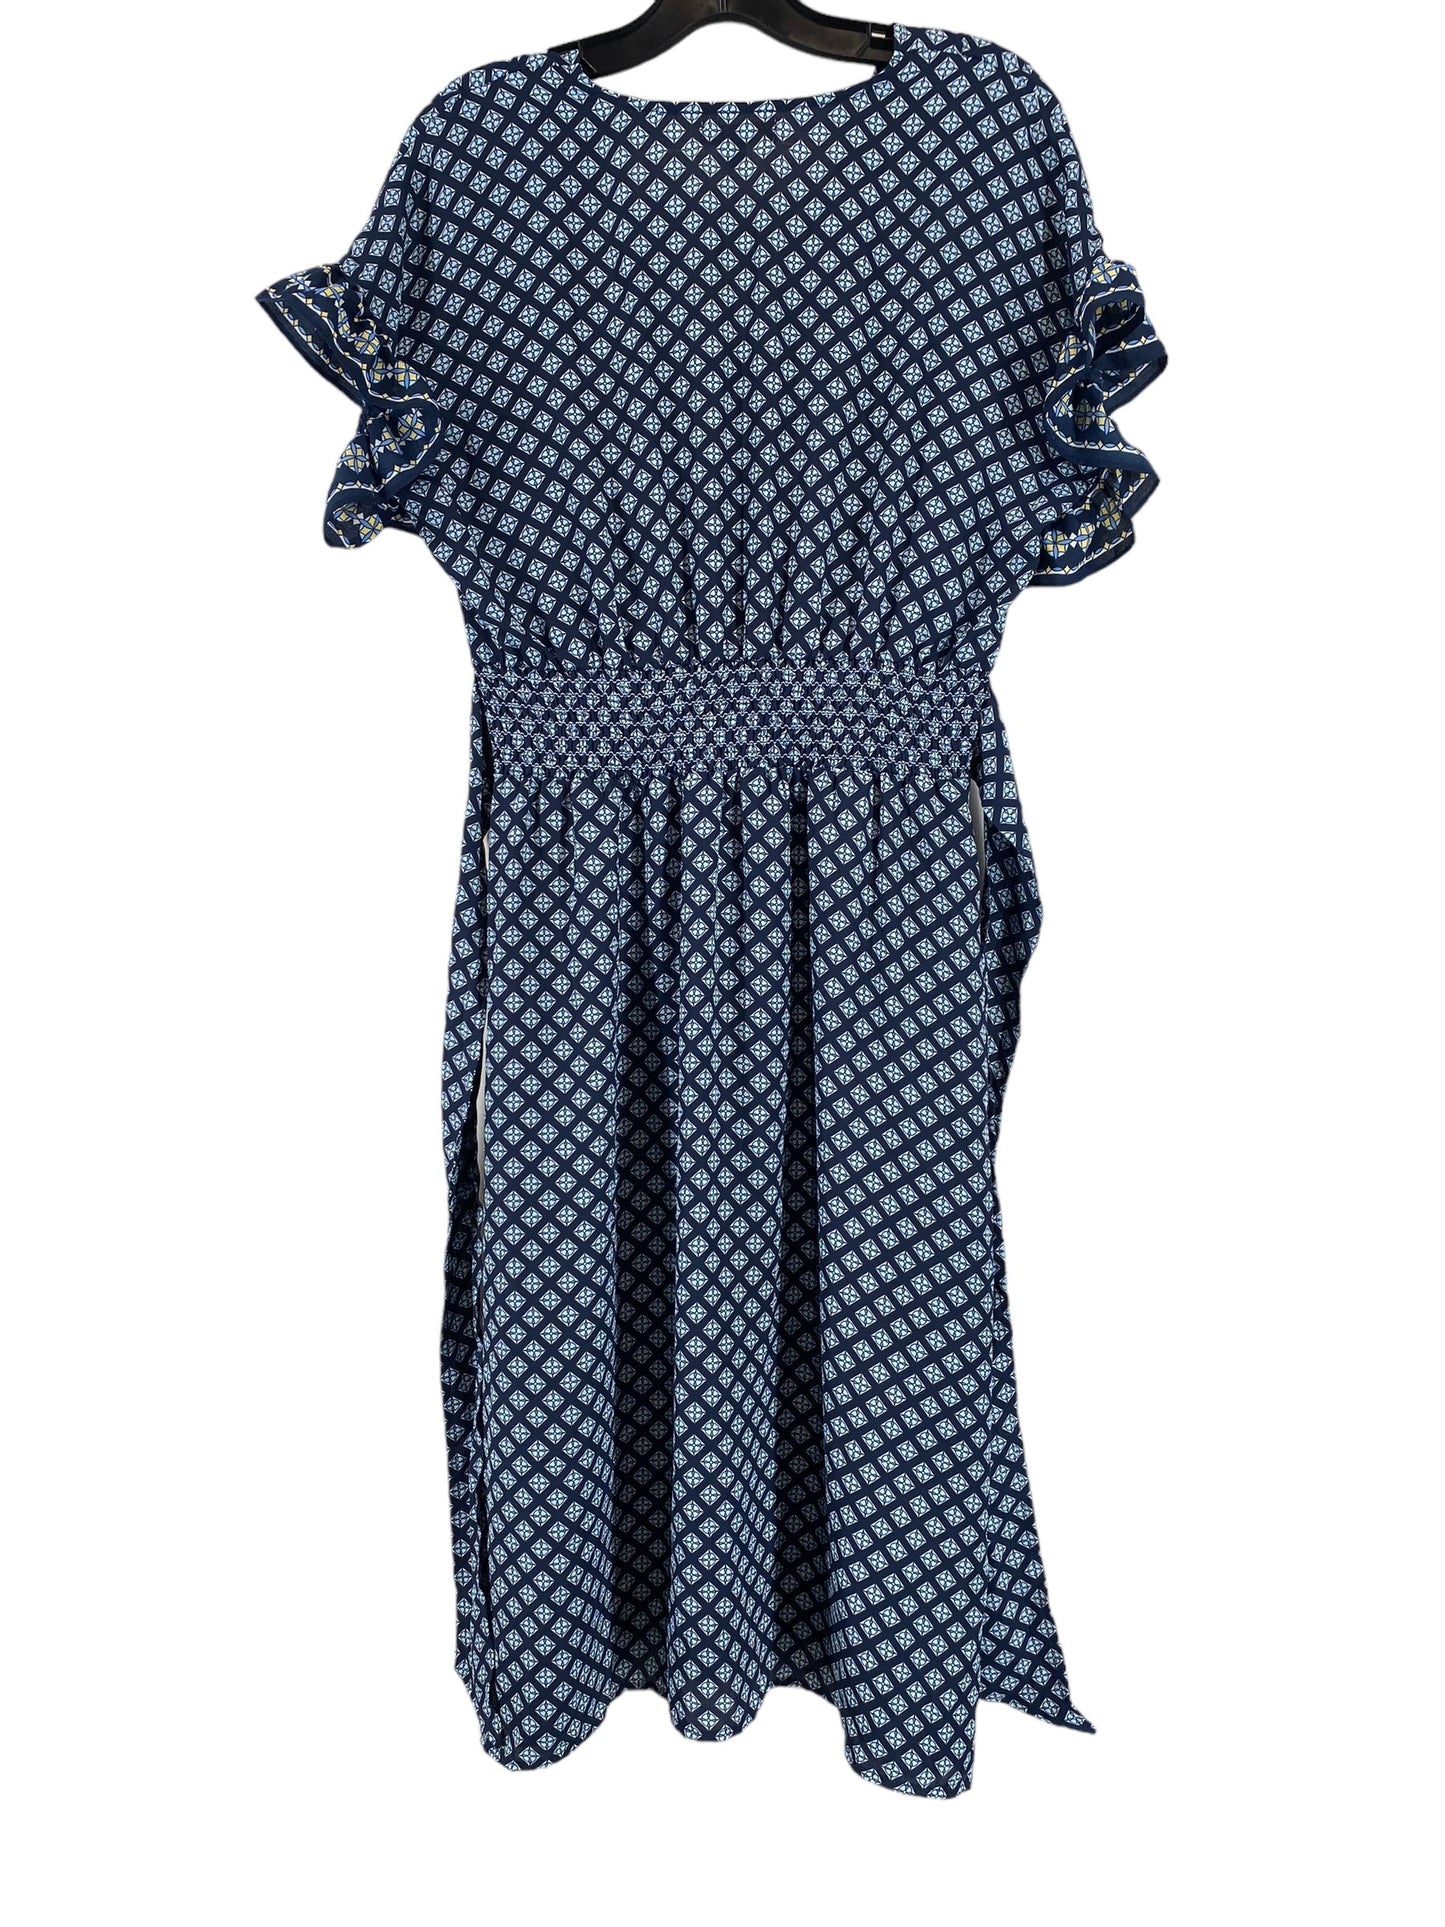 Dress Casual Midi By Max Studio  Size: S